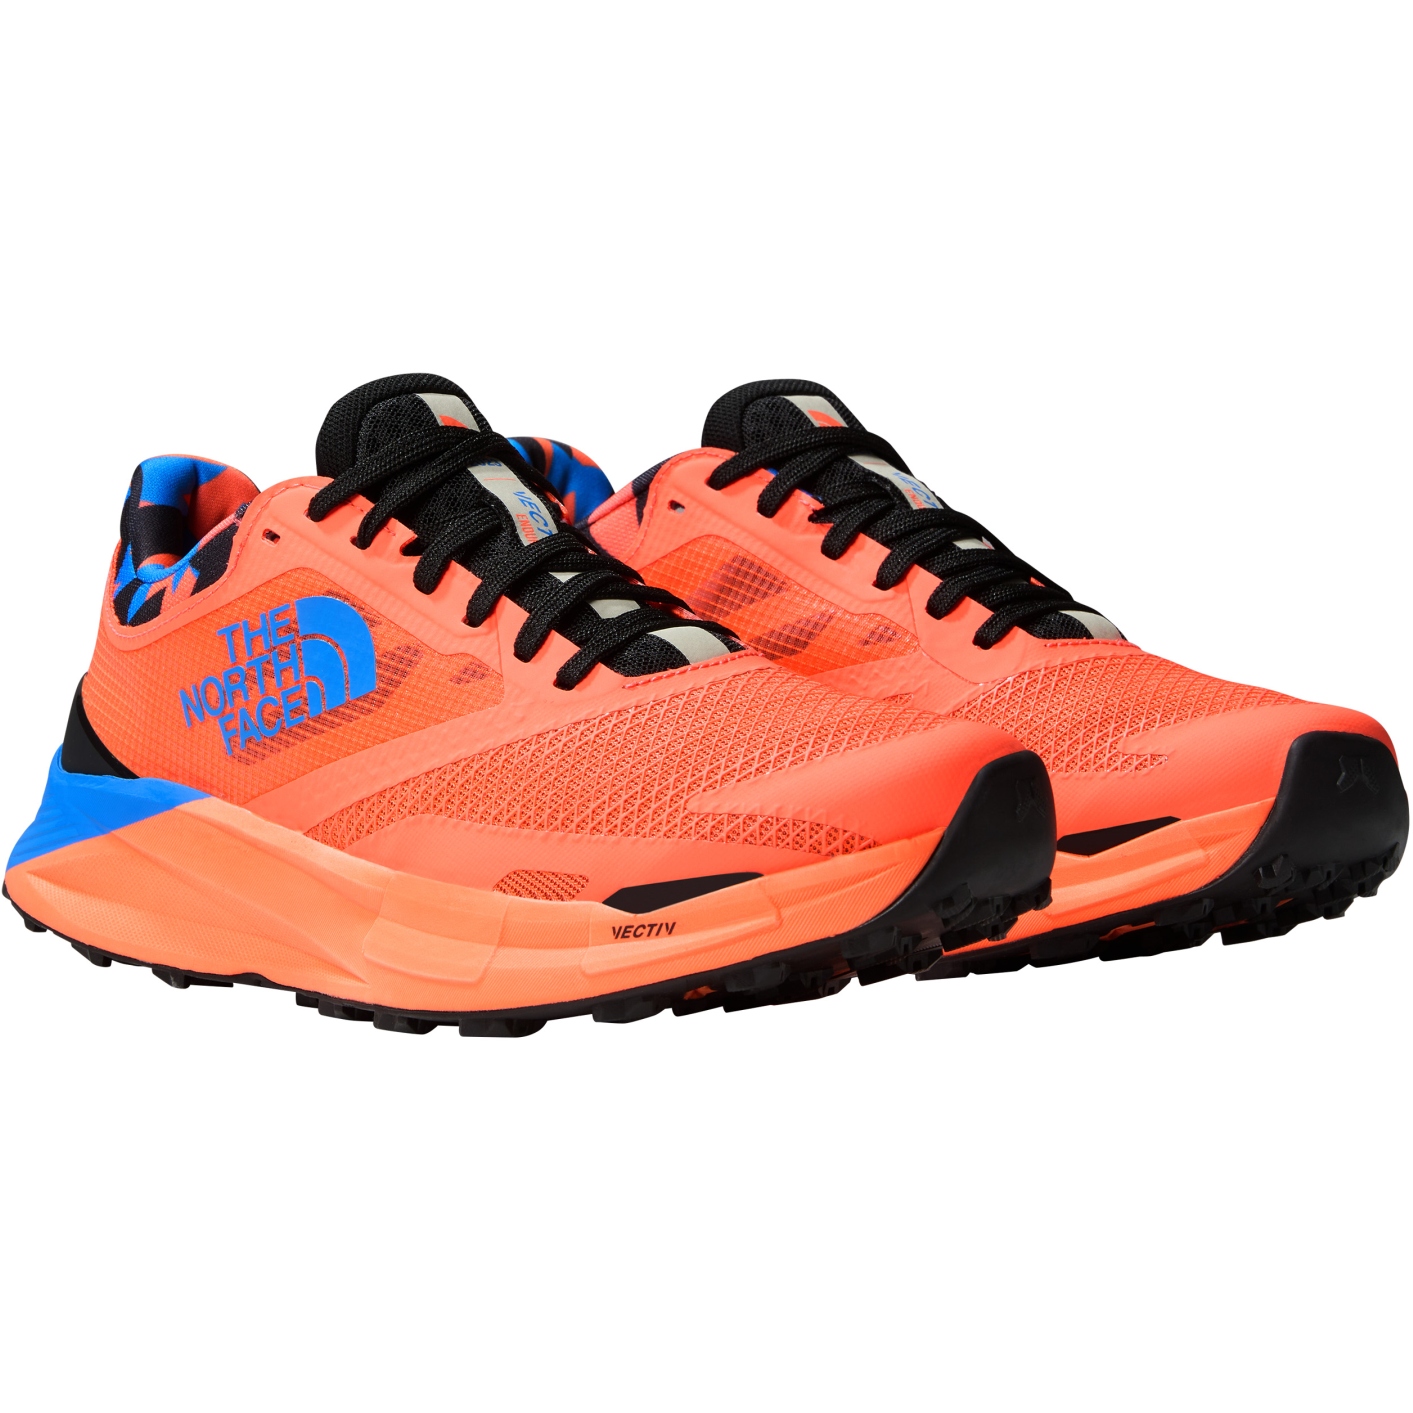 Produktbild von The North Face VECTIV™ Enduris III Athlete Trailrunning-Schuhe Damen - Solar Coral/Optic Blue